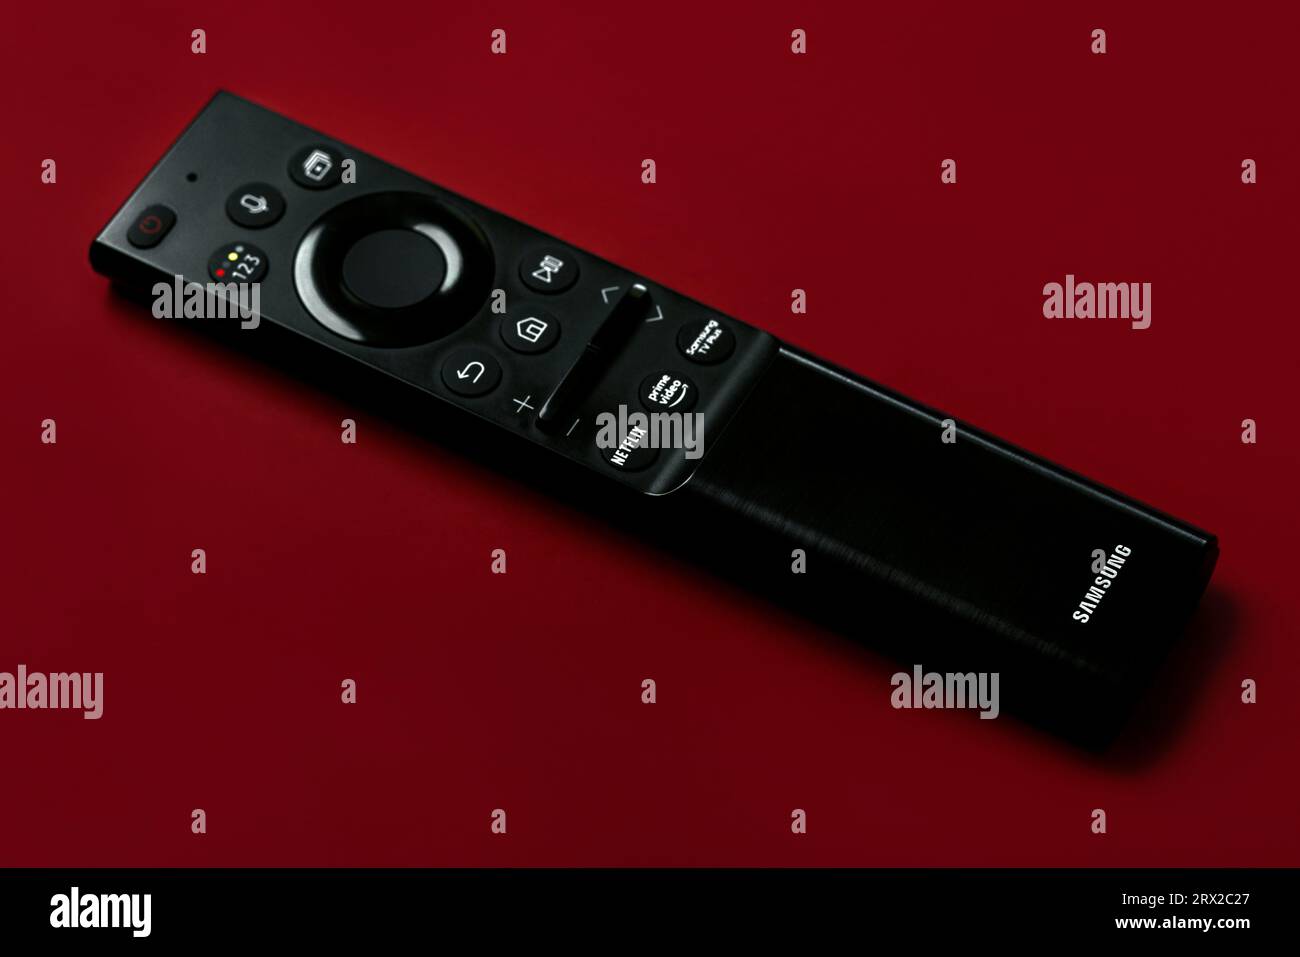 Primo piano del telecomando Samsung Smart TV con pulsanti per accedere ad Amazon prime e Netflix su sfondo rosso Foto Stock